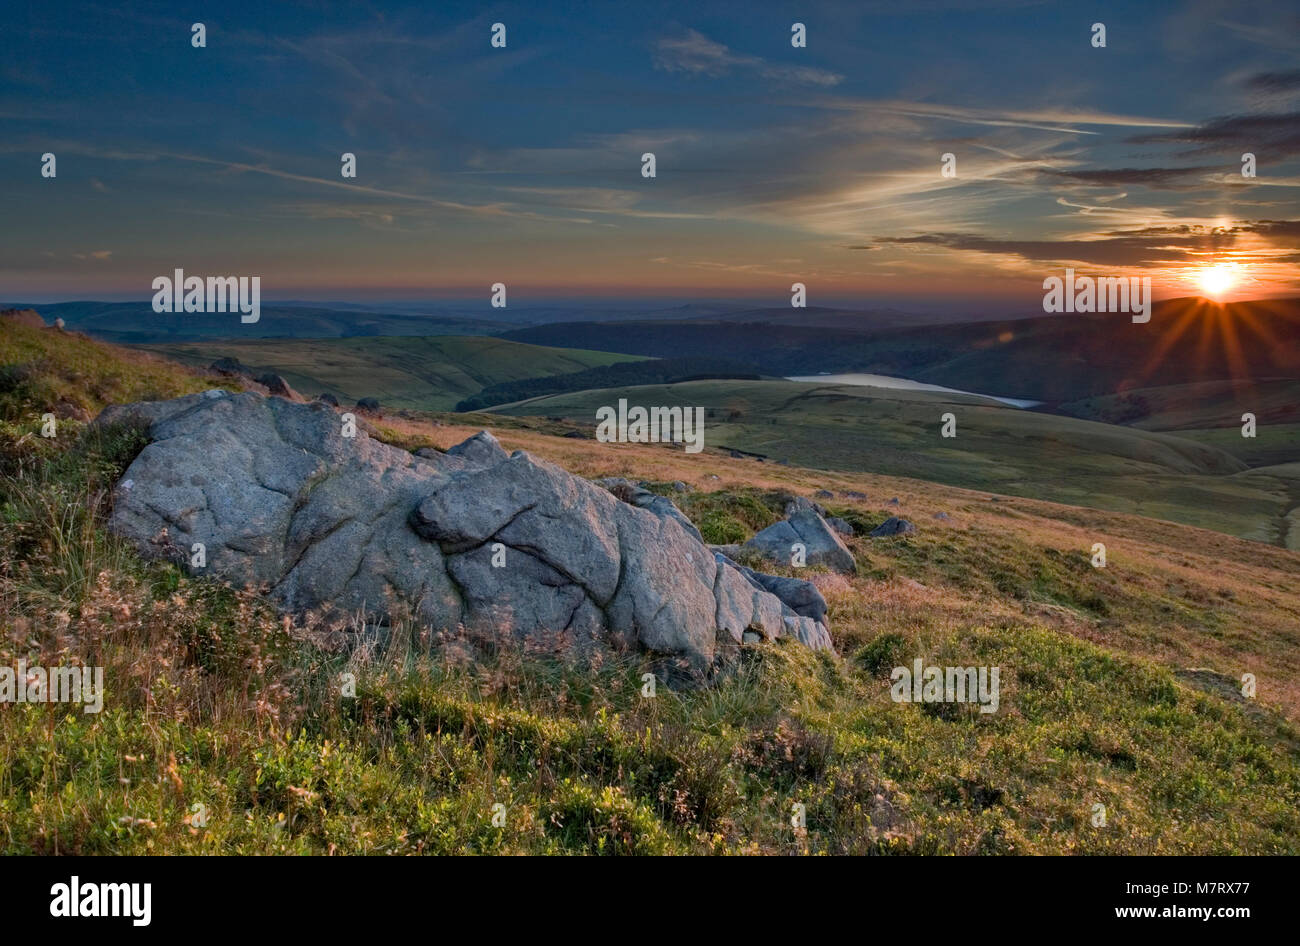 Formation de roche géant au coucher du soleil, Kinder Scout, Derbyshire Peak District, Angleterre Banque D'Images